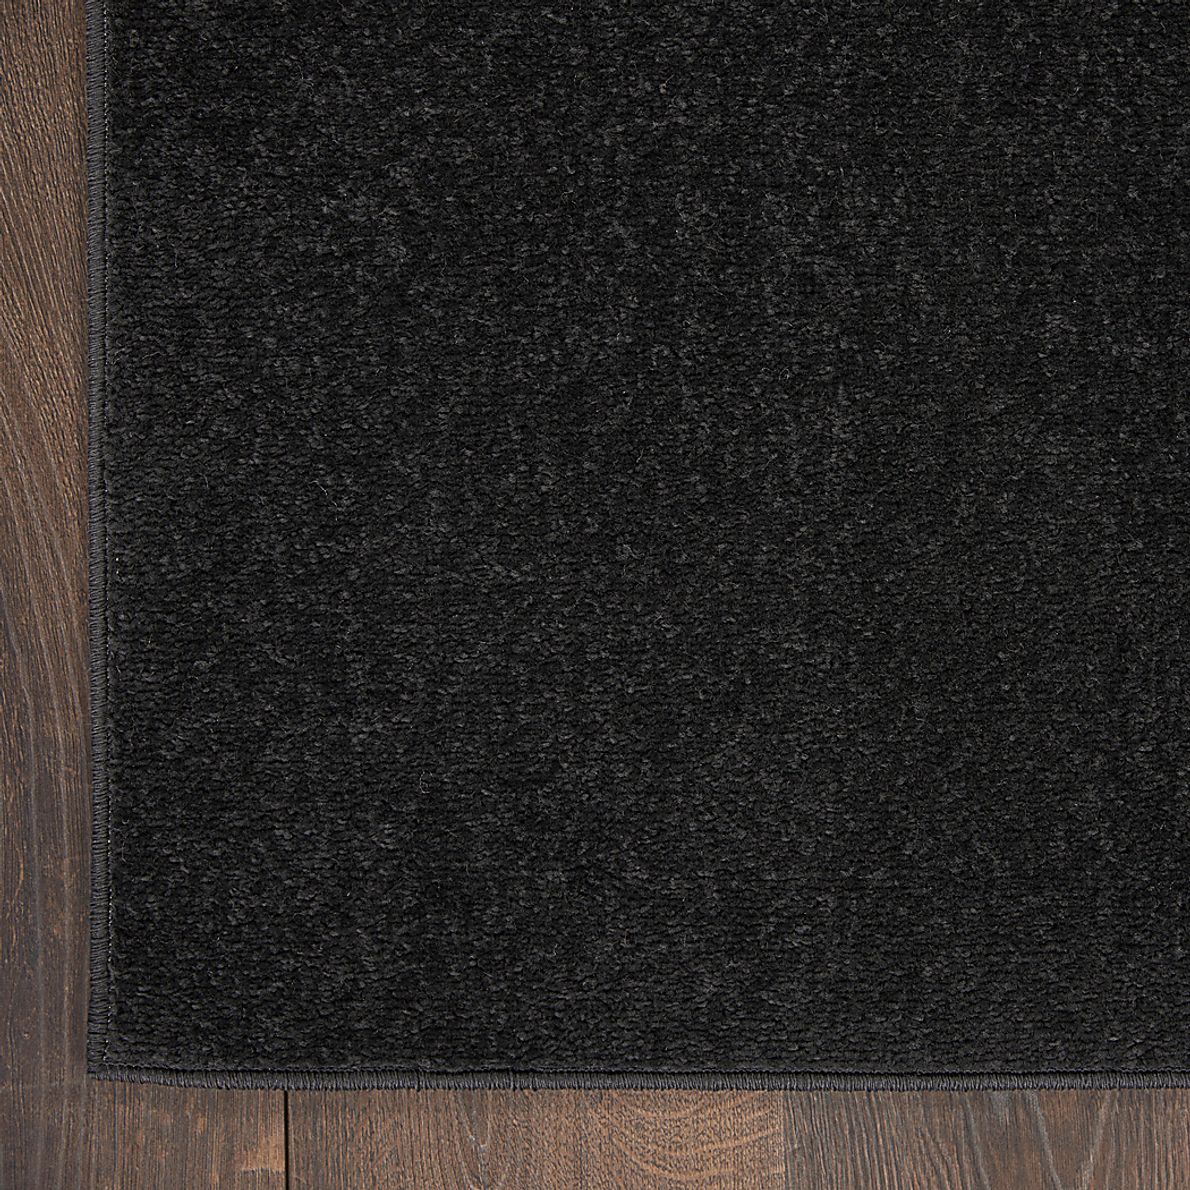 Easthagen Black 8' x 10' Indoor/Outdoor Rug